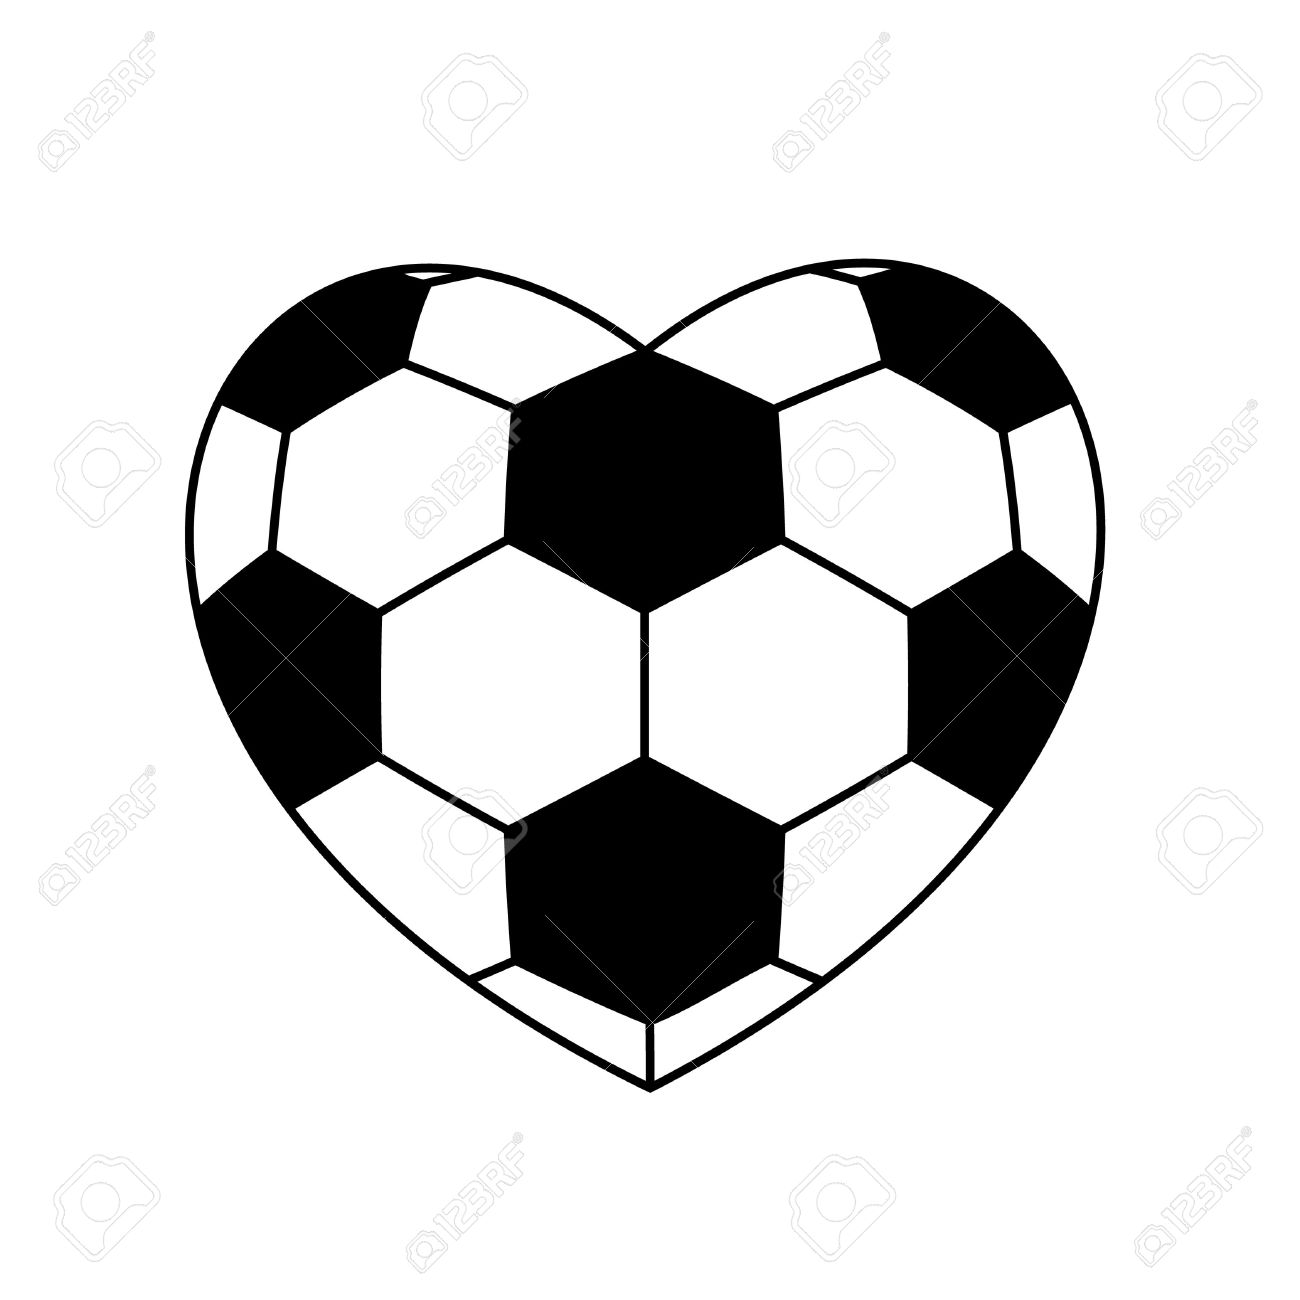 Soccer ball heart clipart